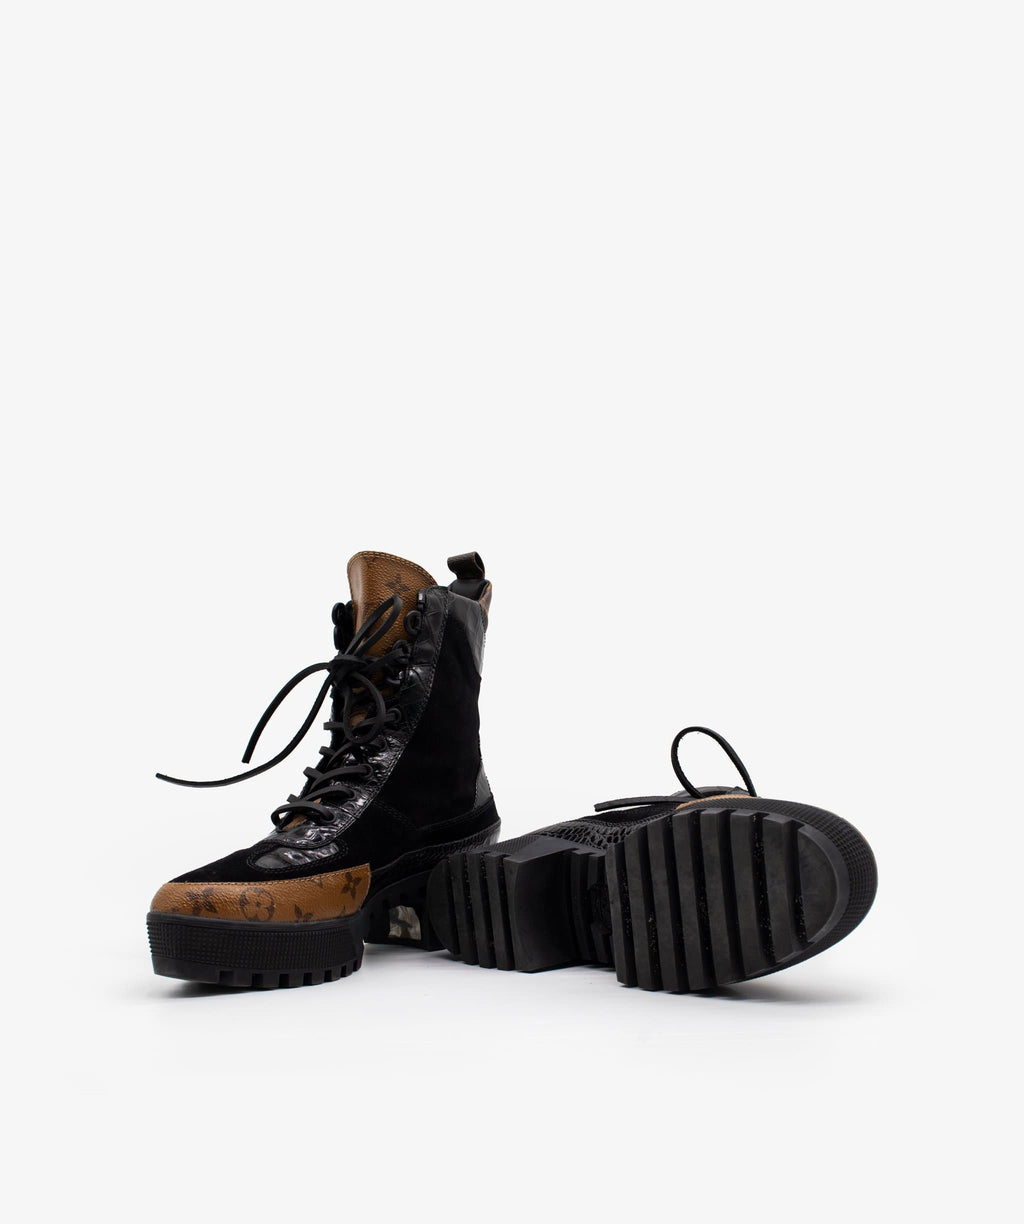 Louis Vuitton LV Monogram Suede Combat Boots - Black Boots, Shoes